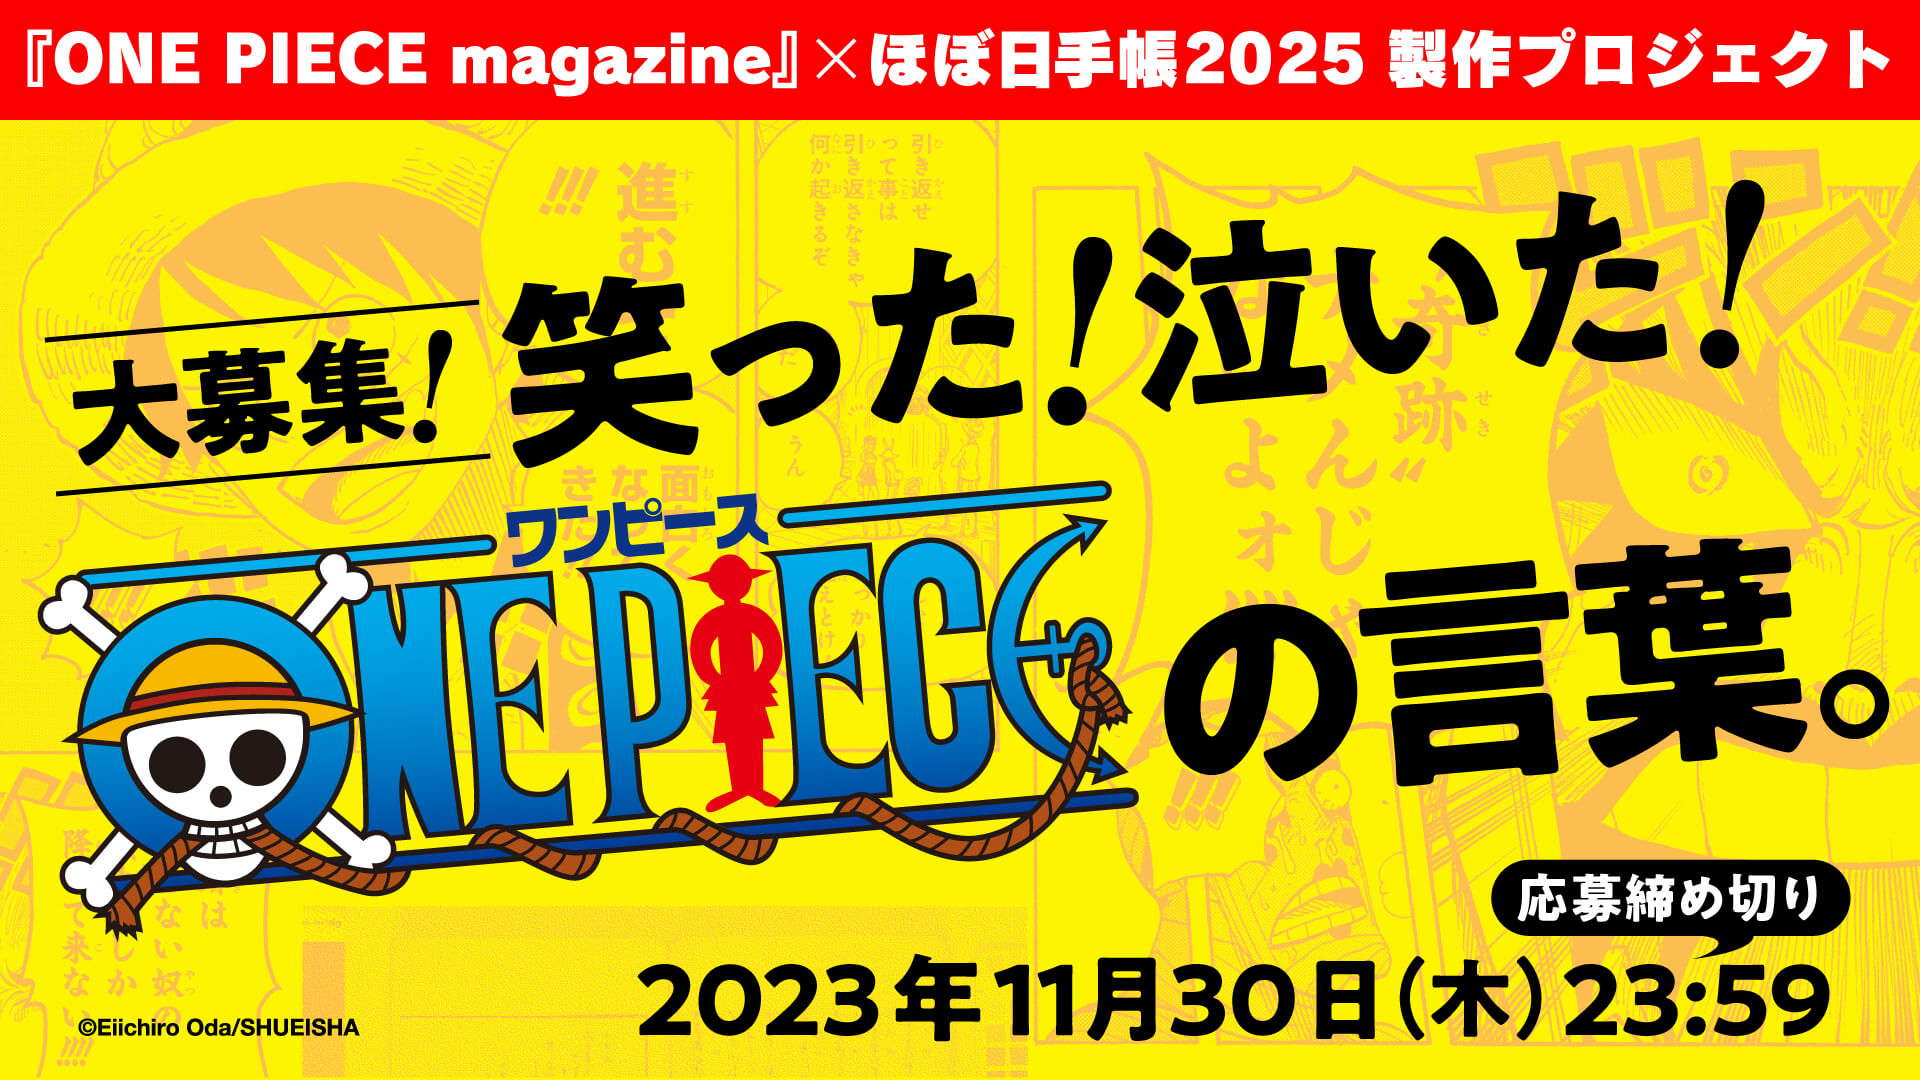 ほぼ日、「ONE PIECE magazine」コラボ手帳2025版の製作・発売を決定